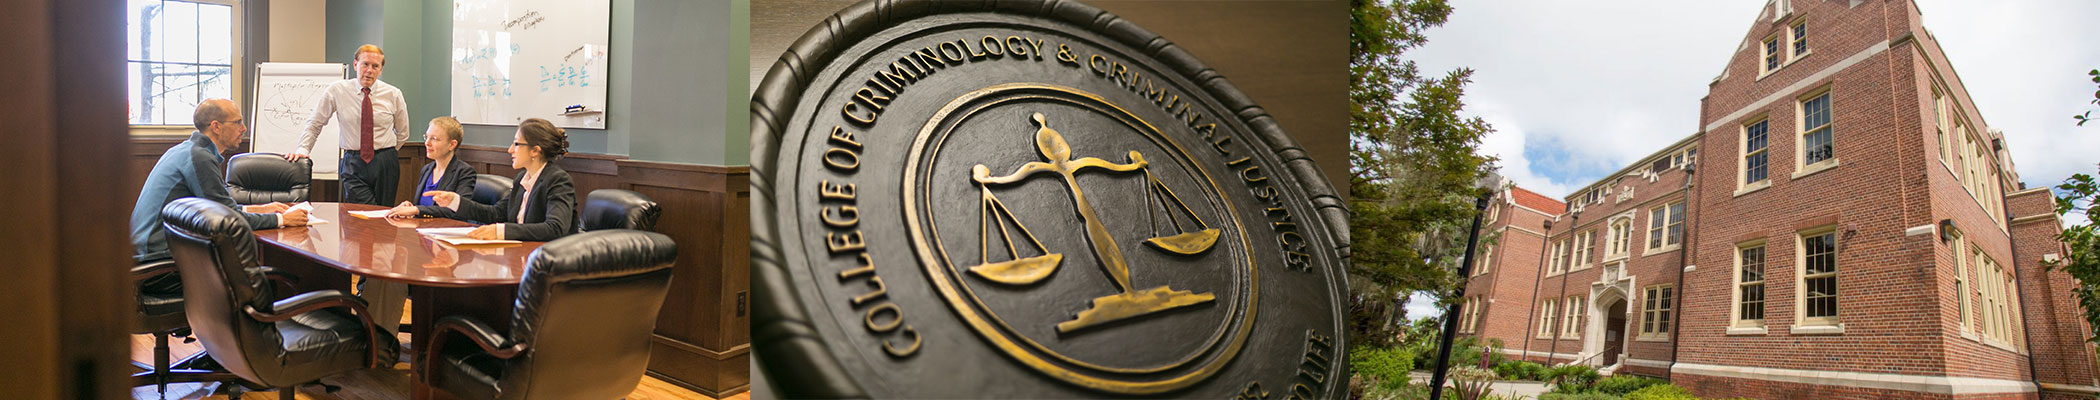 College of Criminology & Criminal Justice Banner Image